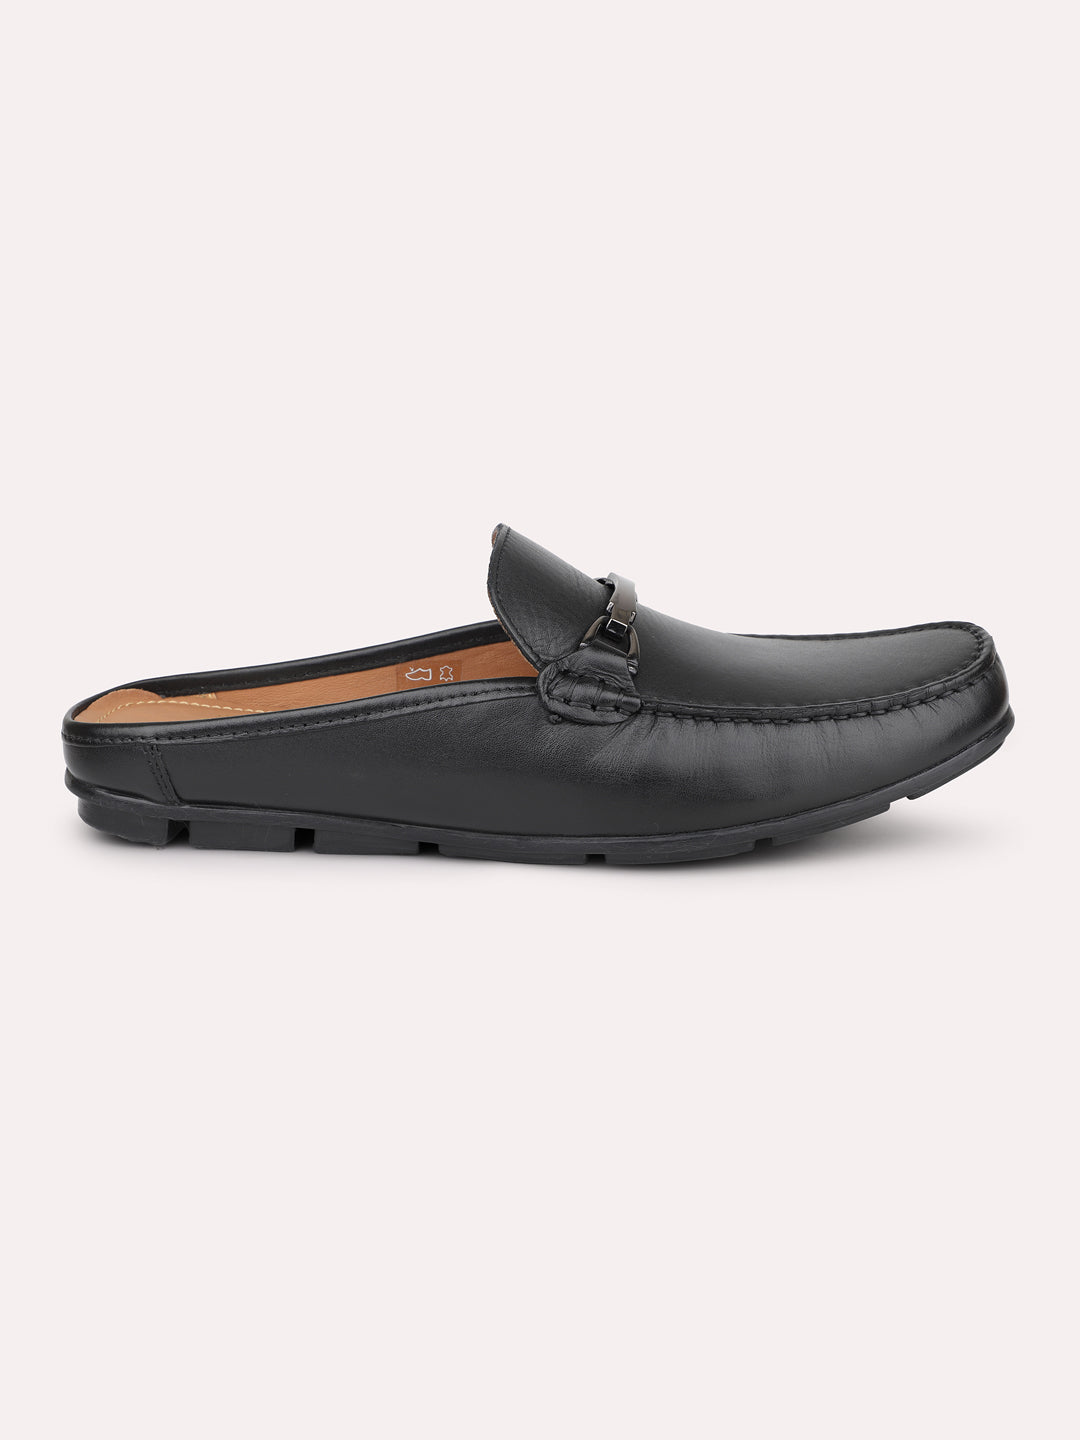 Atesber Black Loafer Shoes For Men